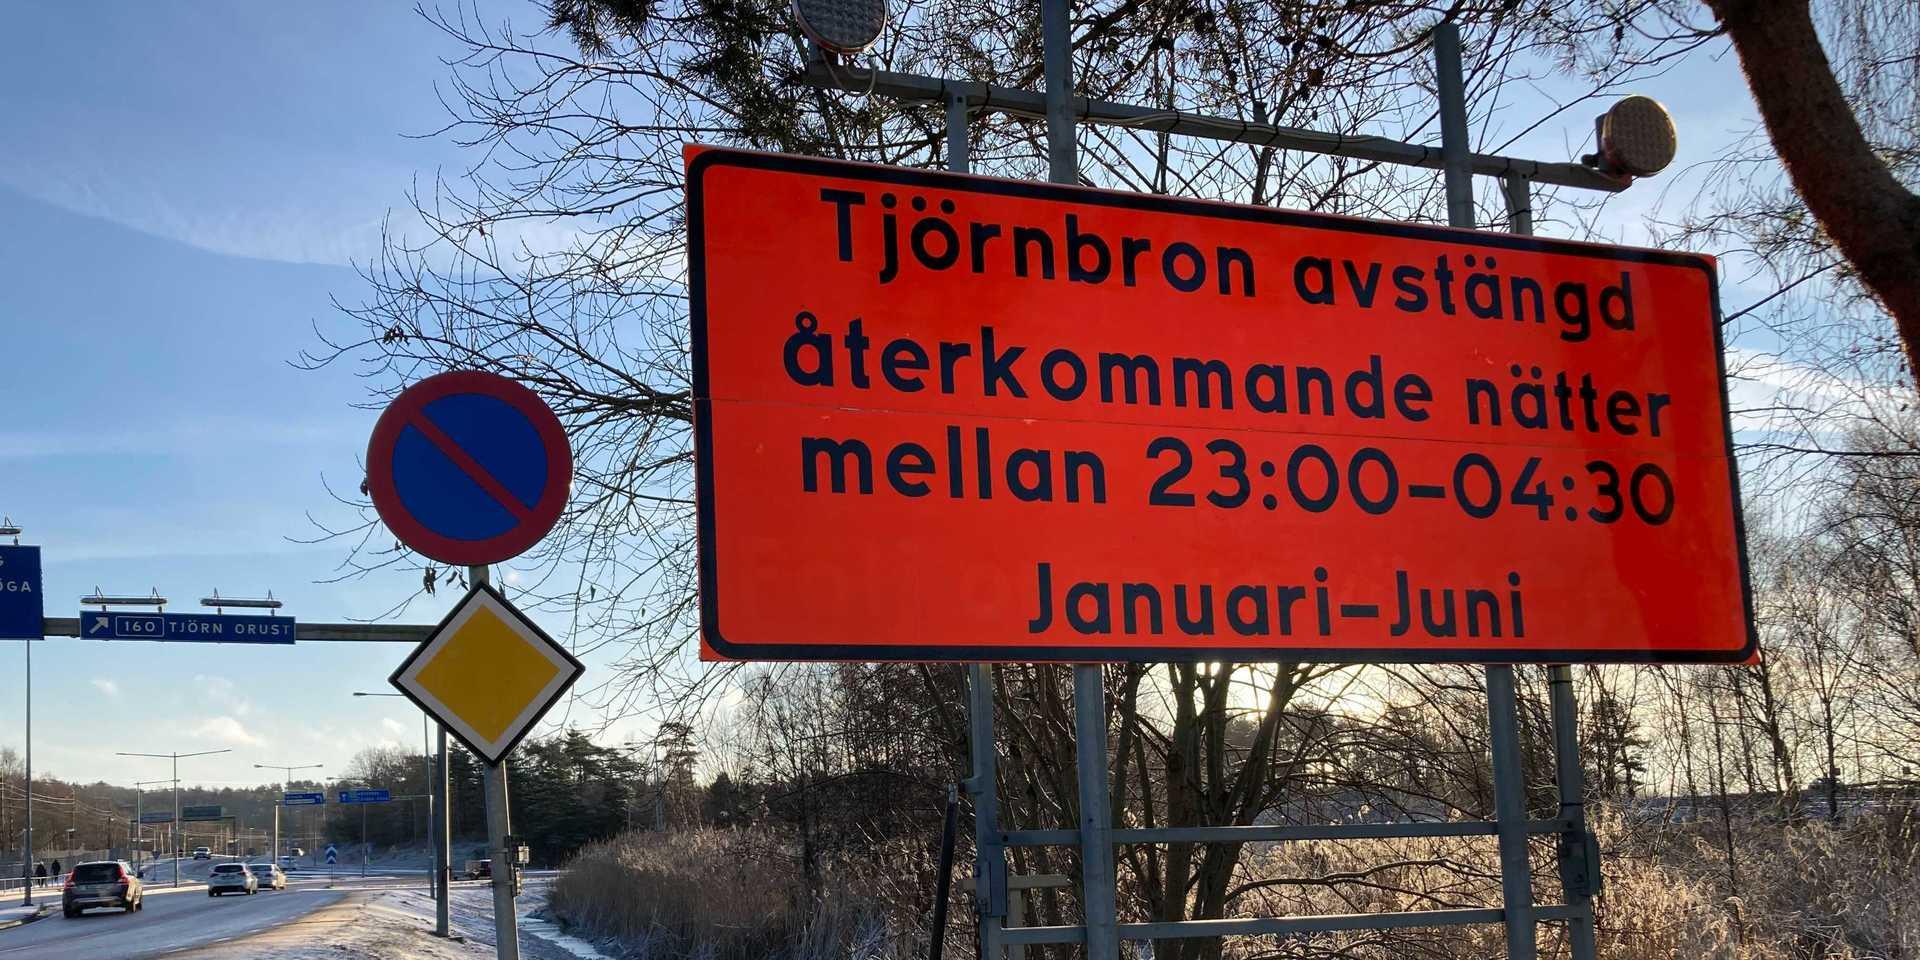 Mellan januari och juni kommer Tjörnbron stängas av flera gånger nattetid, för att snedkablarna ska bytas ut.